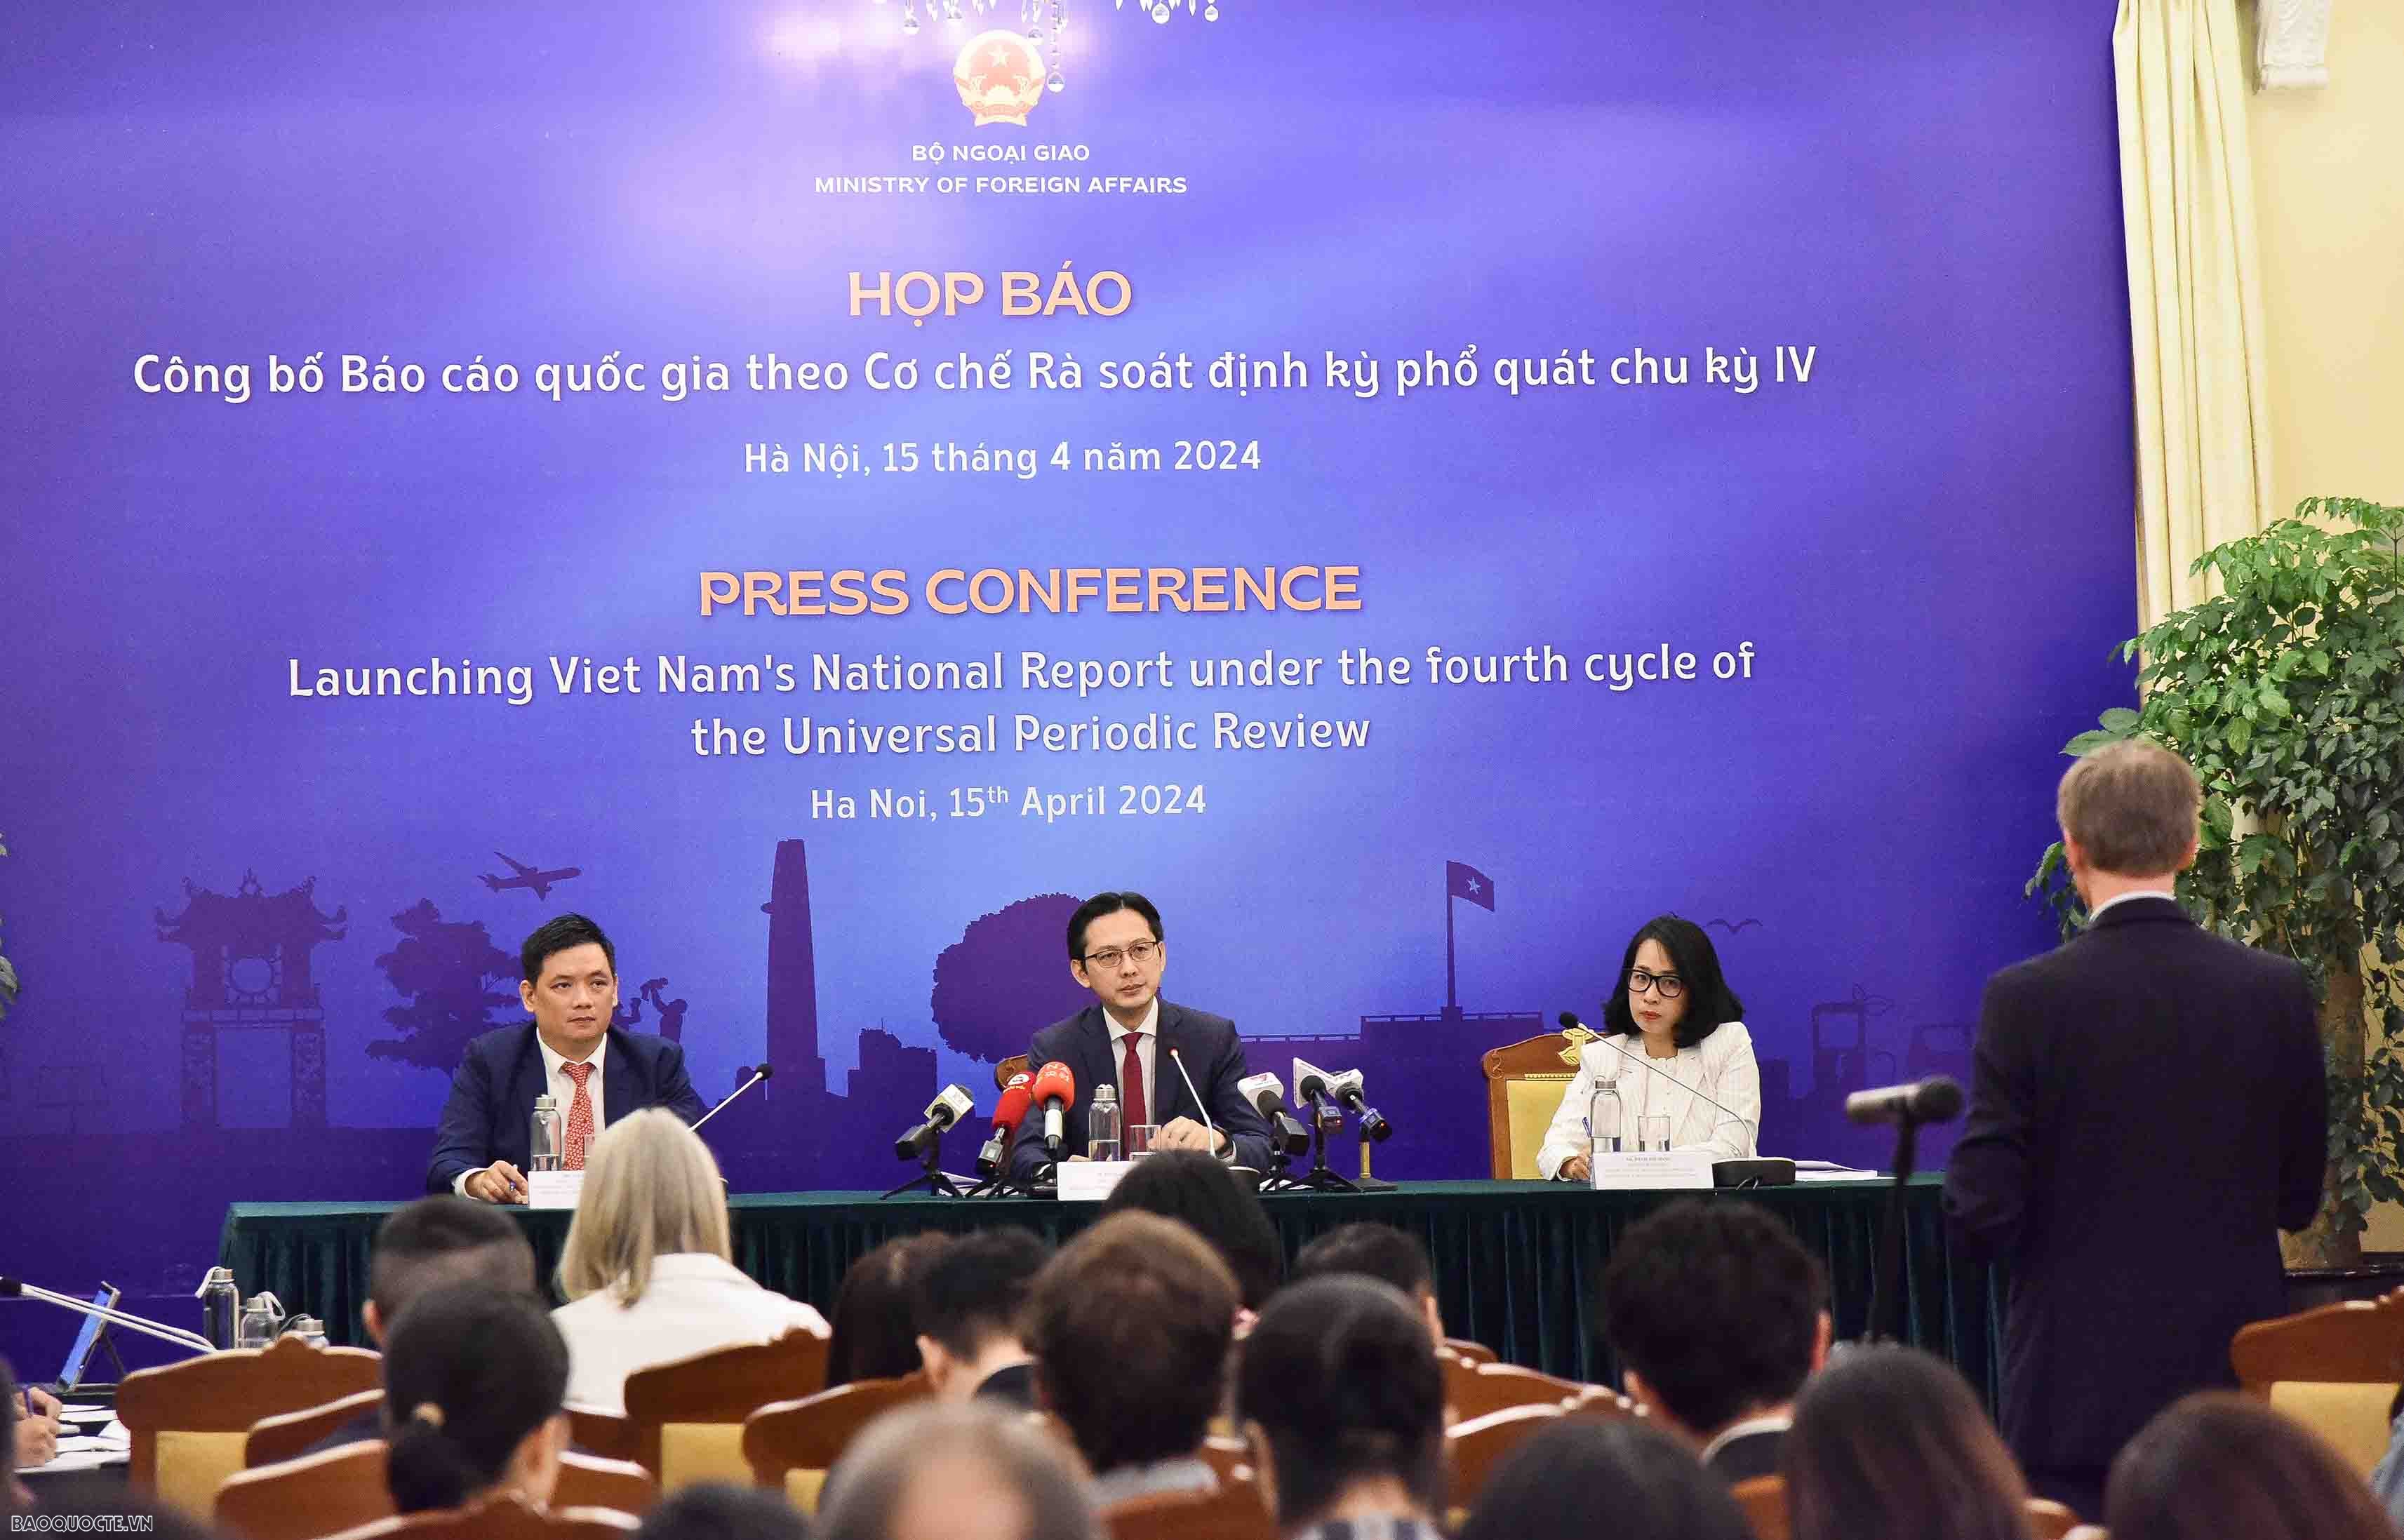 Thứ trưởng Ngoại giao Đỗ Hùng Việt chủ trì họp báo công bố Báo cáo quốc gia theo cơ chế rà soát định kỳ phổ quát chu kỳ IV. (Ảnh: Nguyễn Hồng)